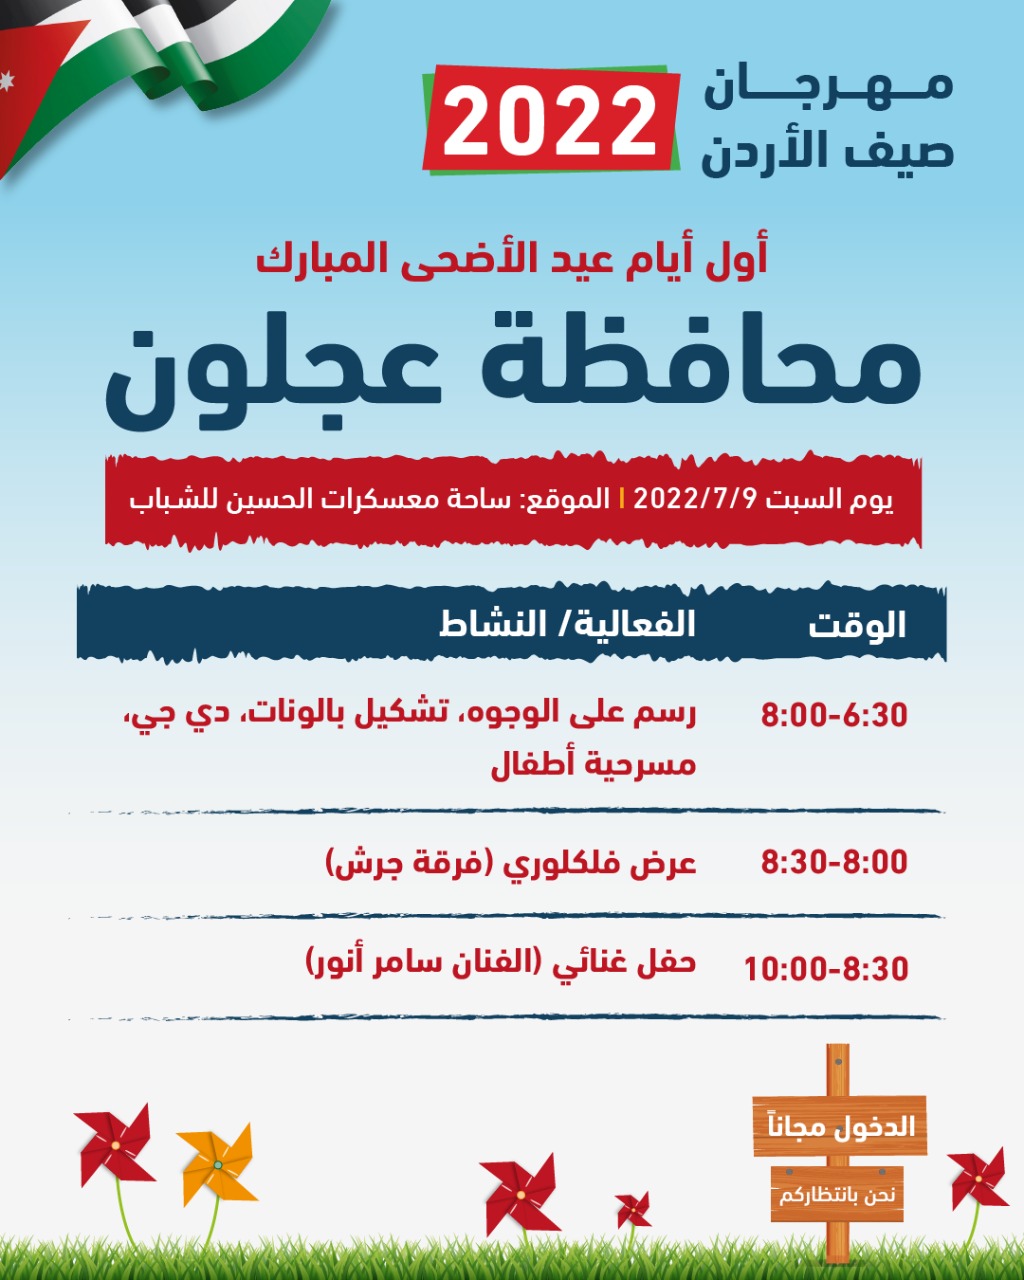 إستئناف فعاليات مهرجان صيف الأردن في أيام عيد الأضحى